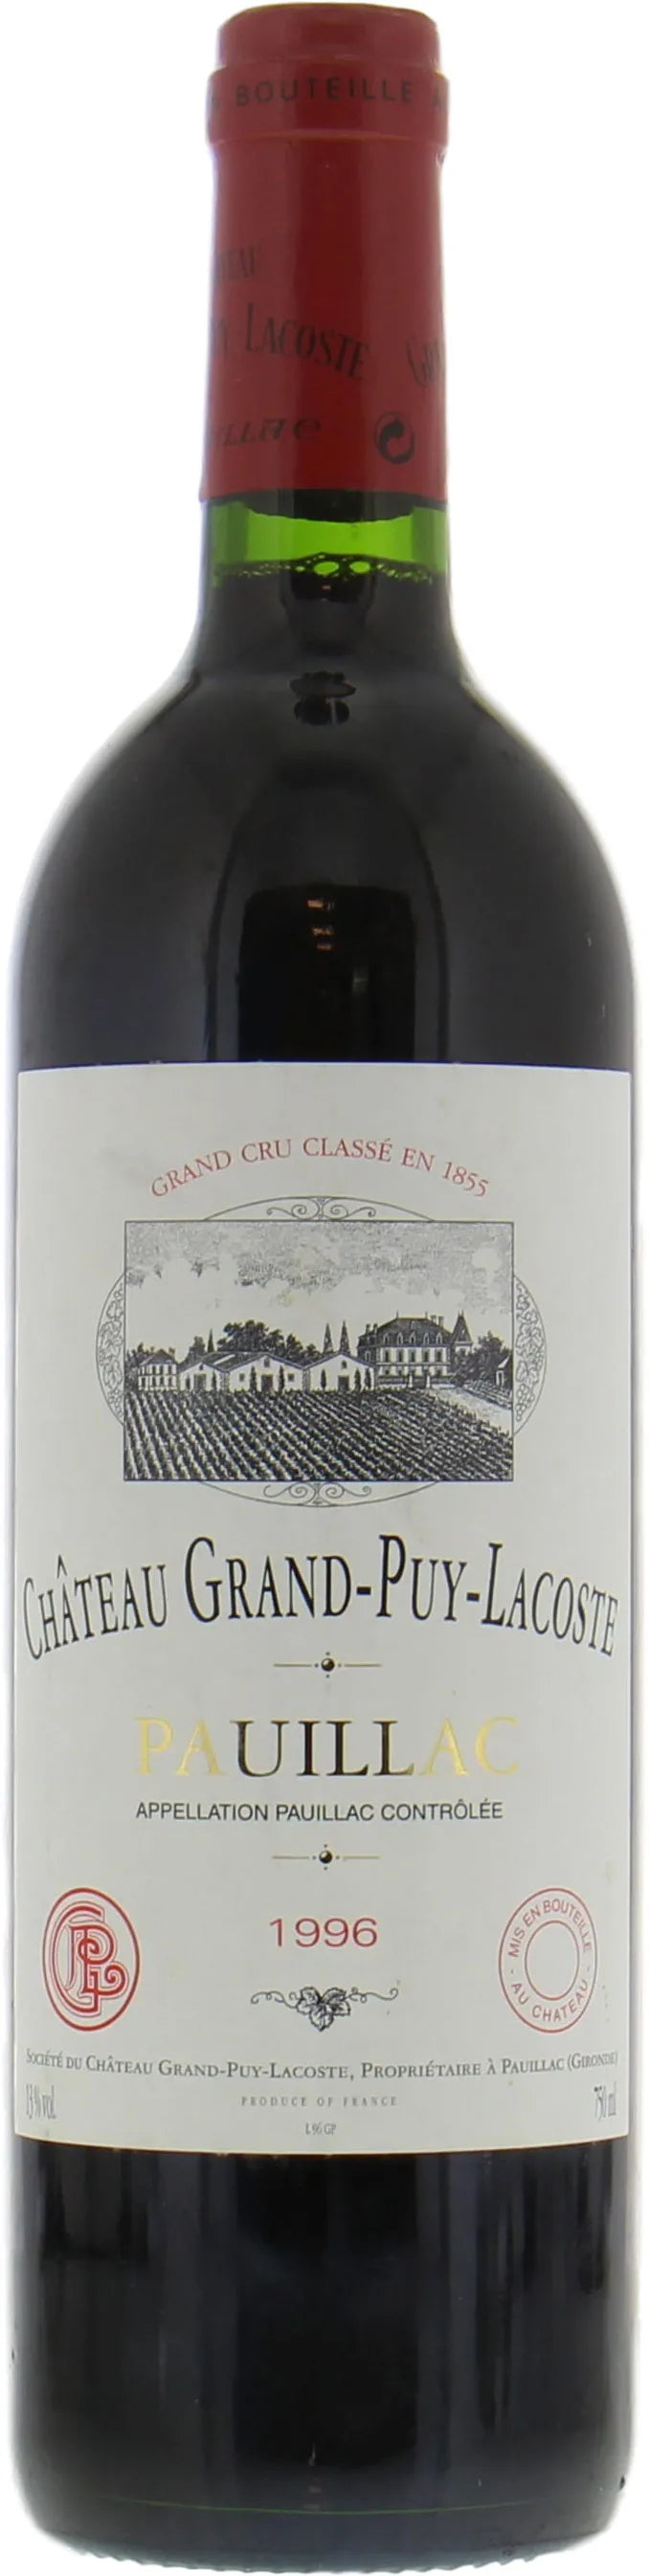 lys s sofa Lavet en kontrakt 1996 Chateau Grand-Puy-Lacoste Pauillac – Mad Wild Wine